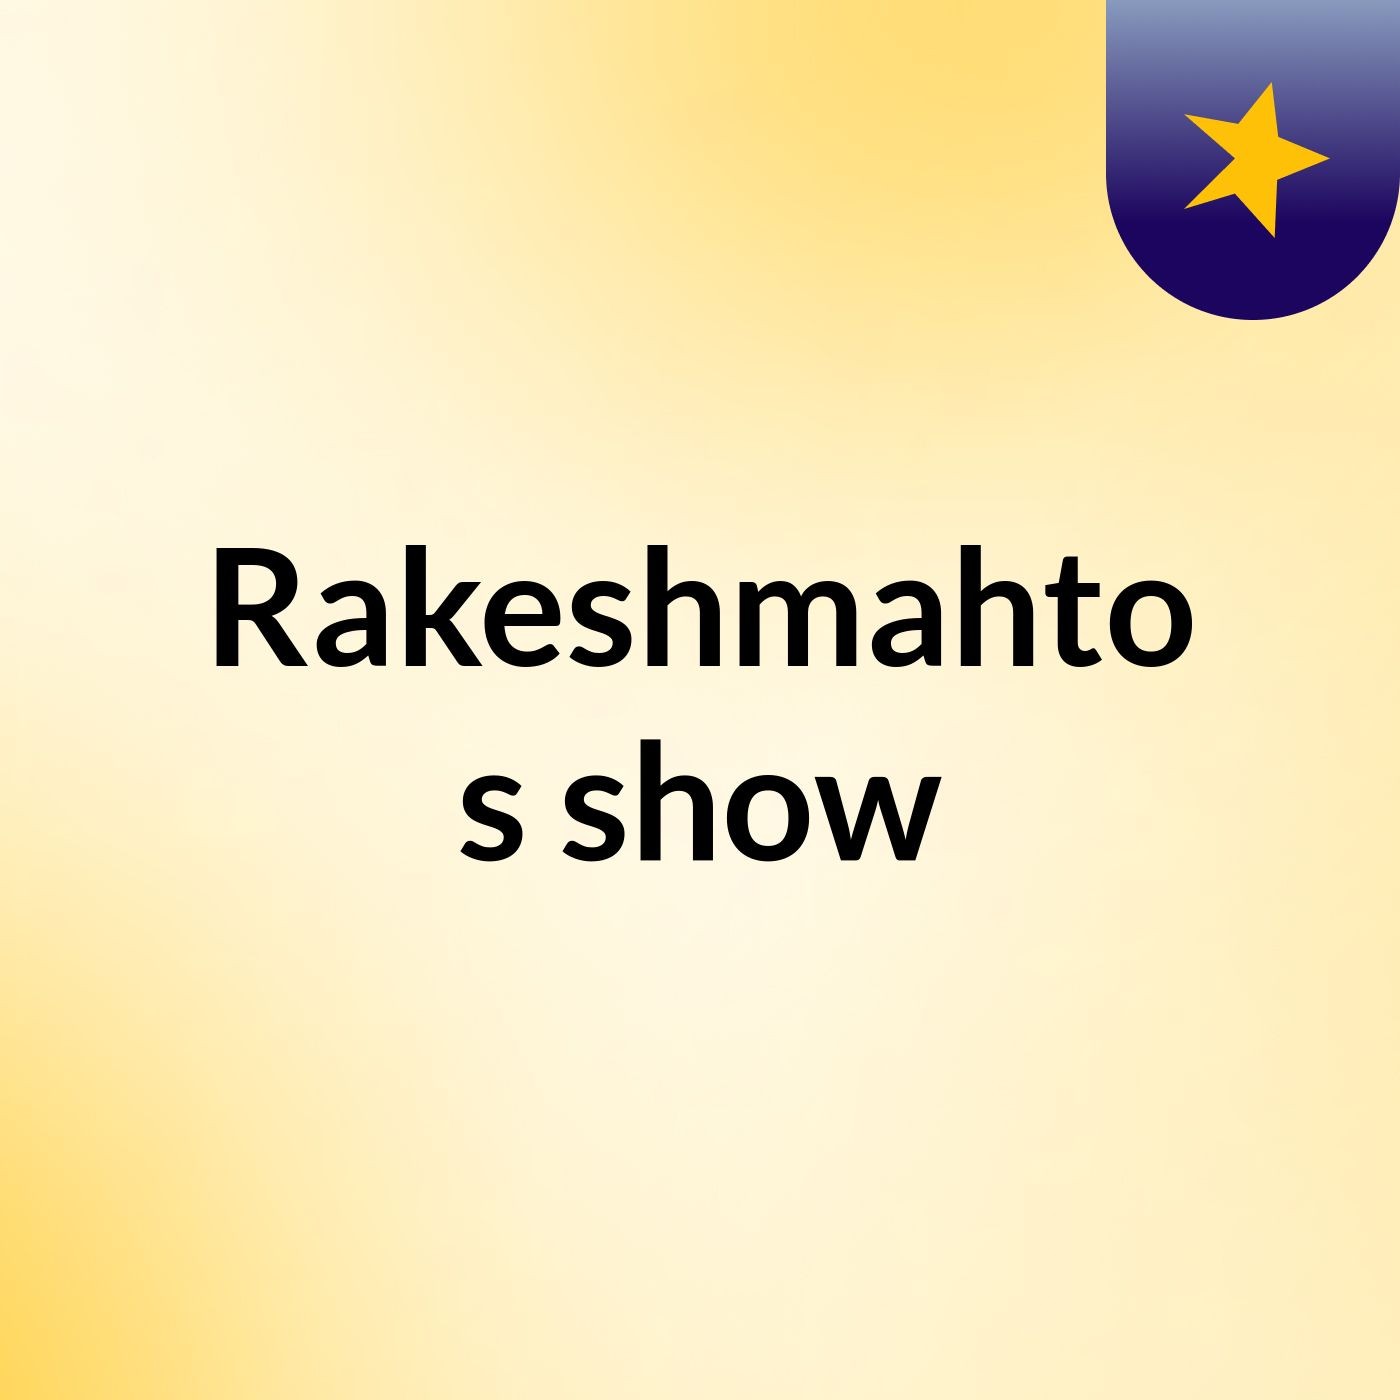 Rakeshmahto's show